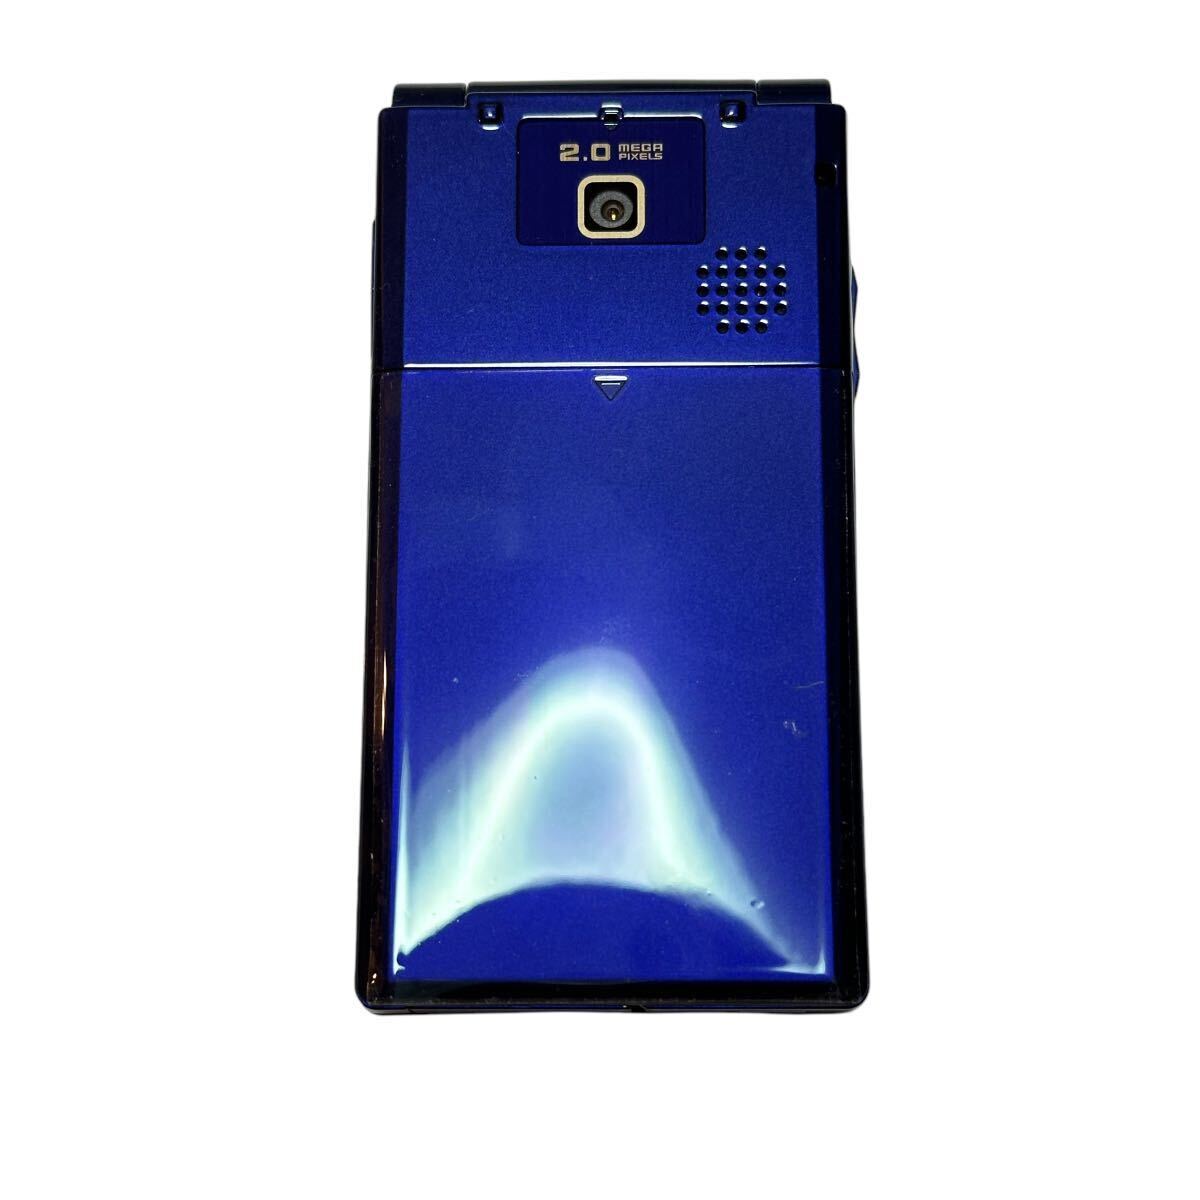 未使用 SoftBank 740SC ブルー ガラケー 携帯電話 折りたたみ携帯 3G プリペイド_画像3